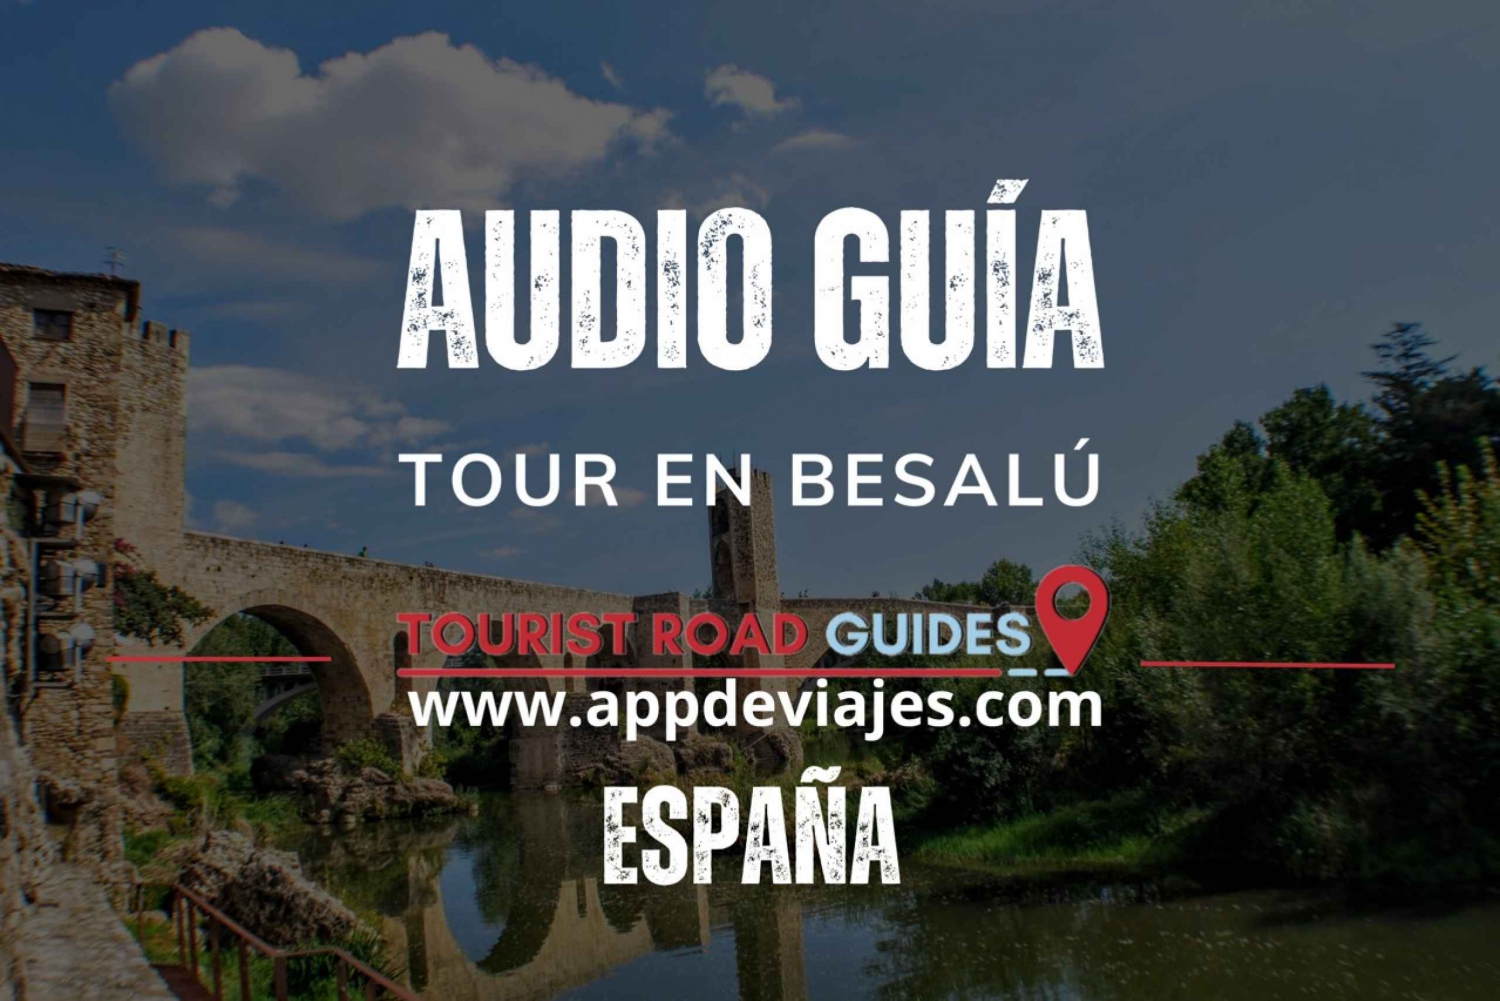 Appen Tour Besalú for selvguidede turer